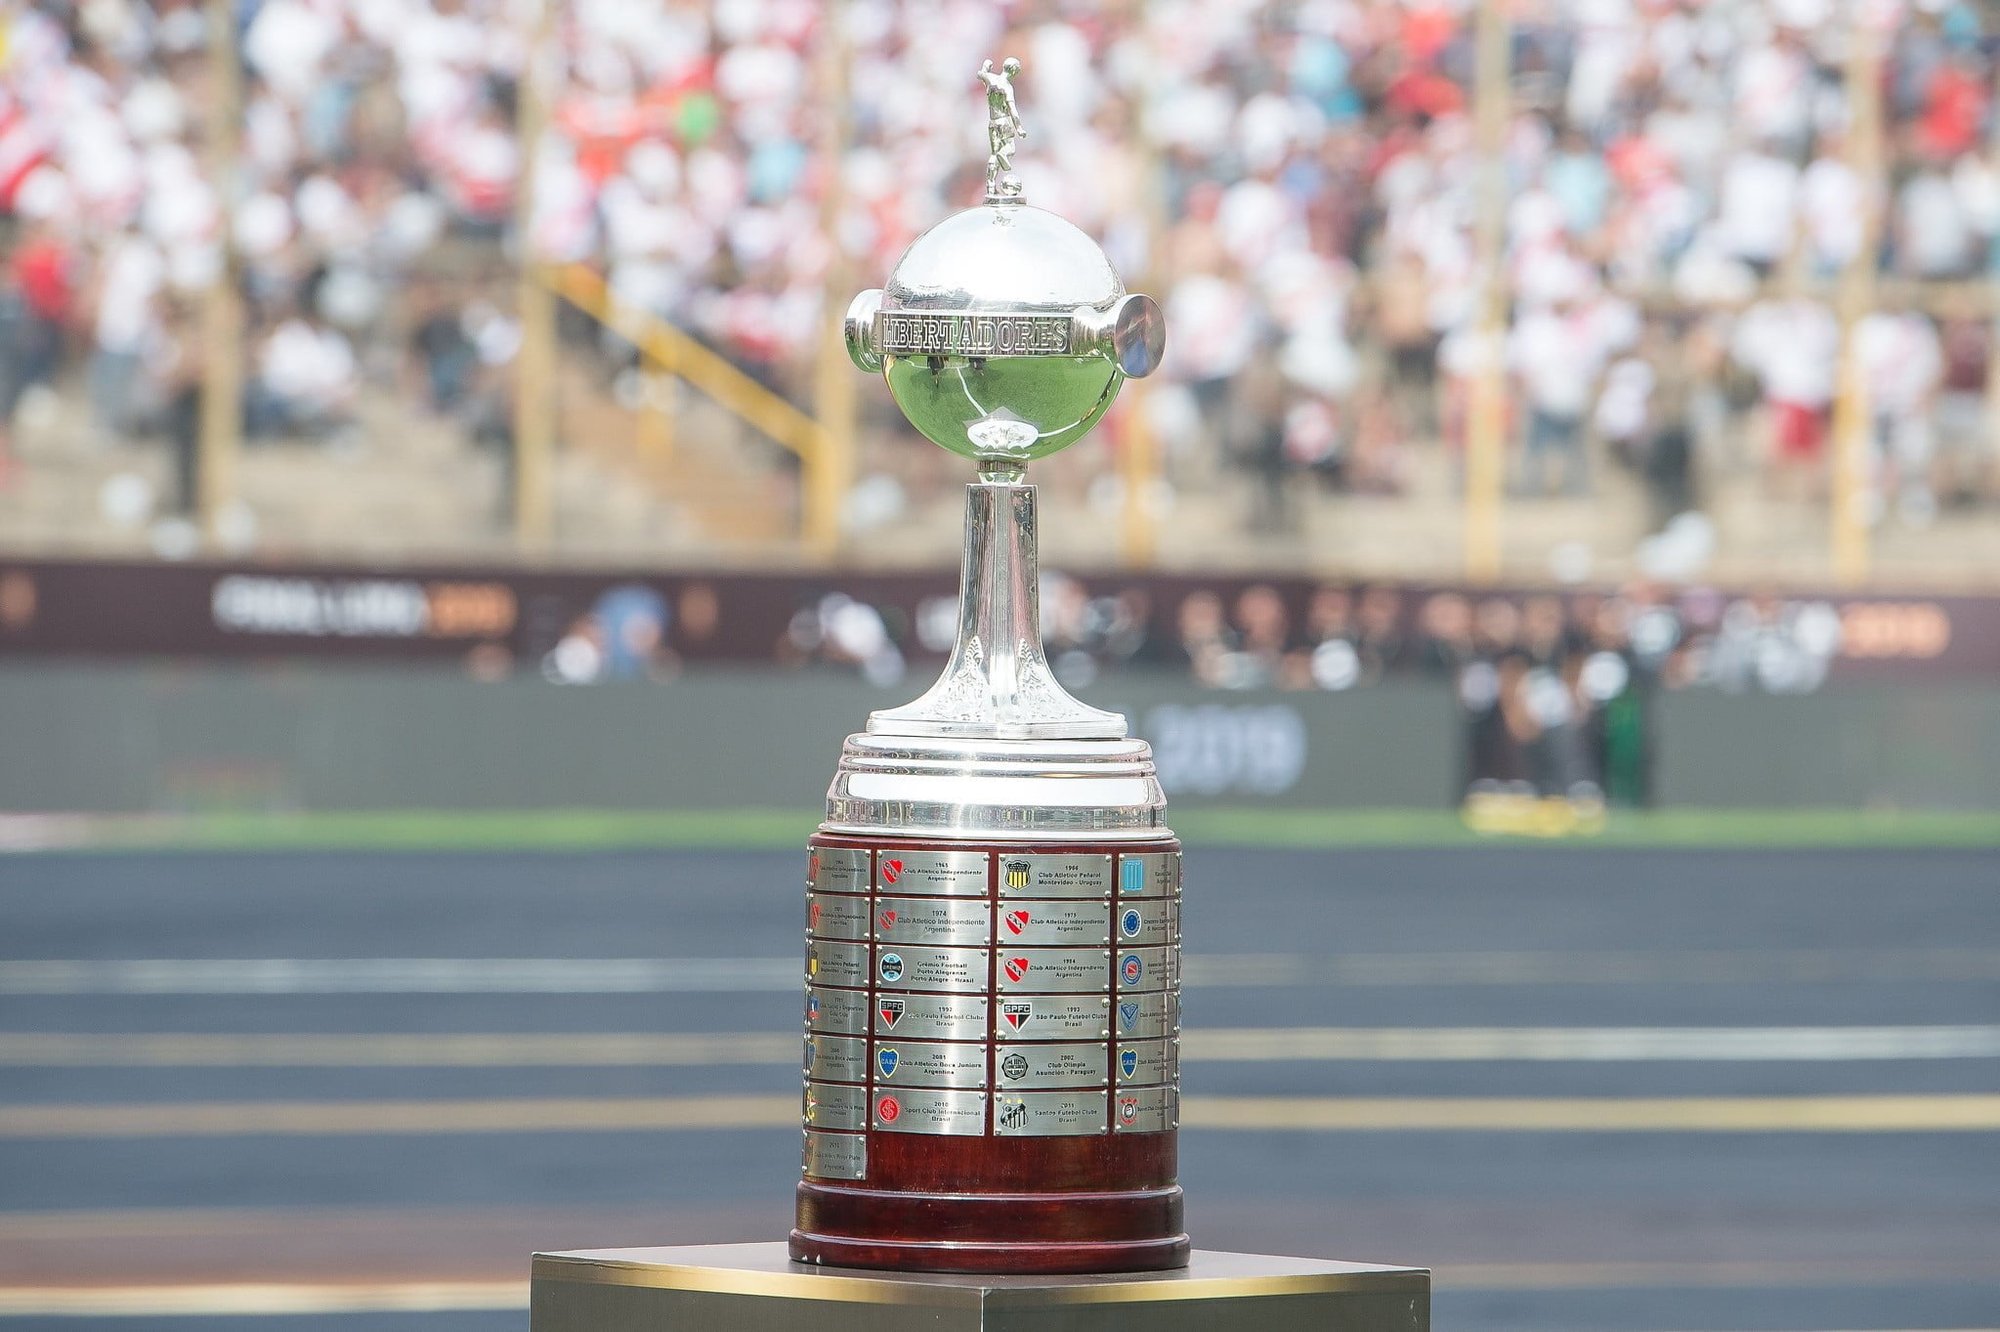 Todos os campeões da Copa Libertadores da América - Folha PE